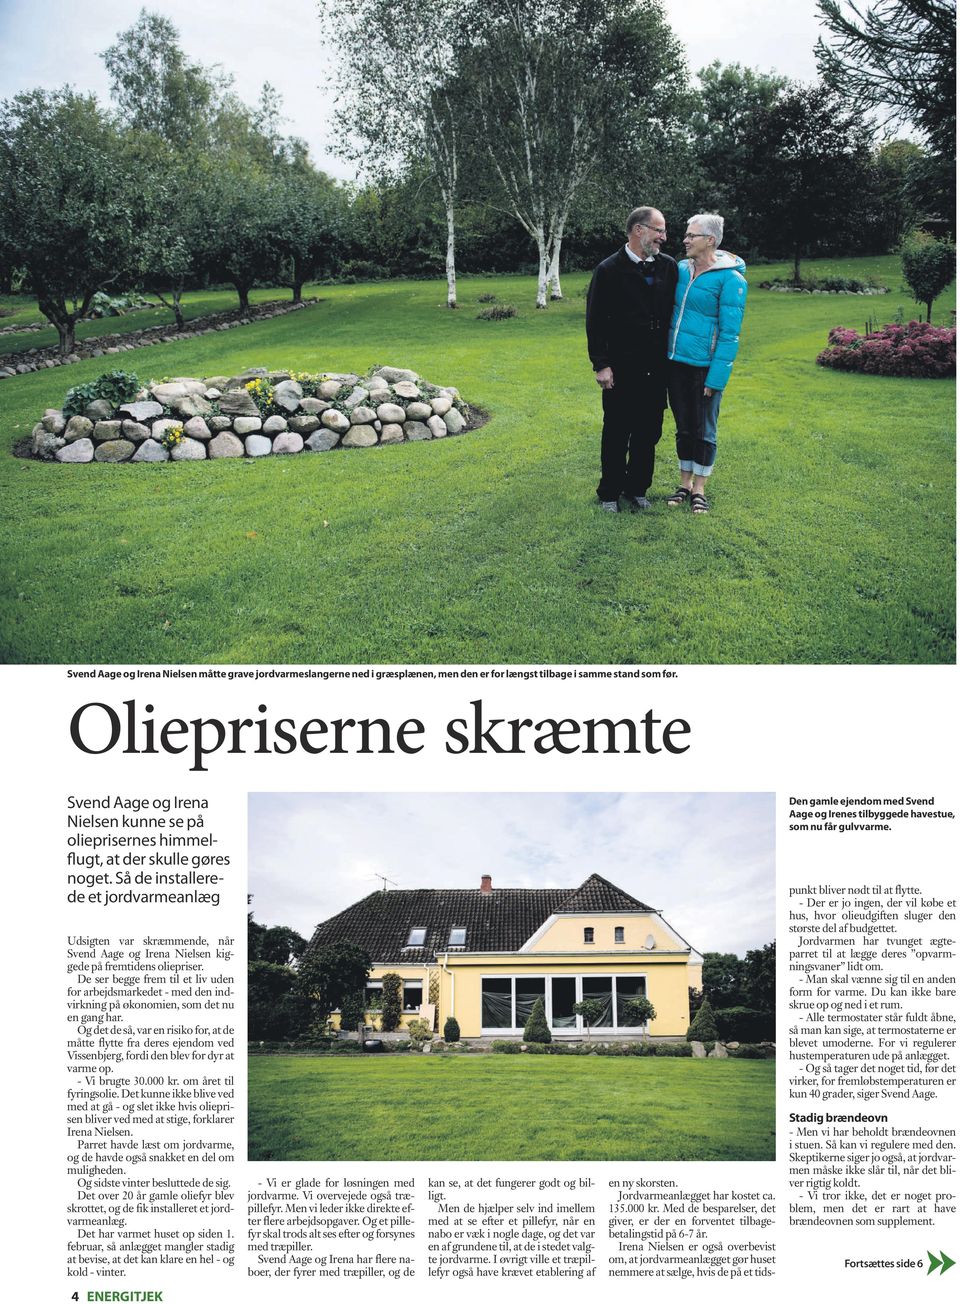 Så de installerede et jordvarmeanlæg Udsigten var skræmmende, når Svend Aage og Irena Nielsen kiggede på fremtidens oliepriser.